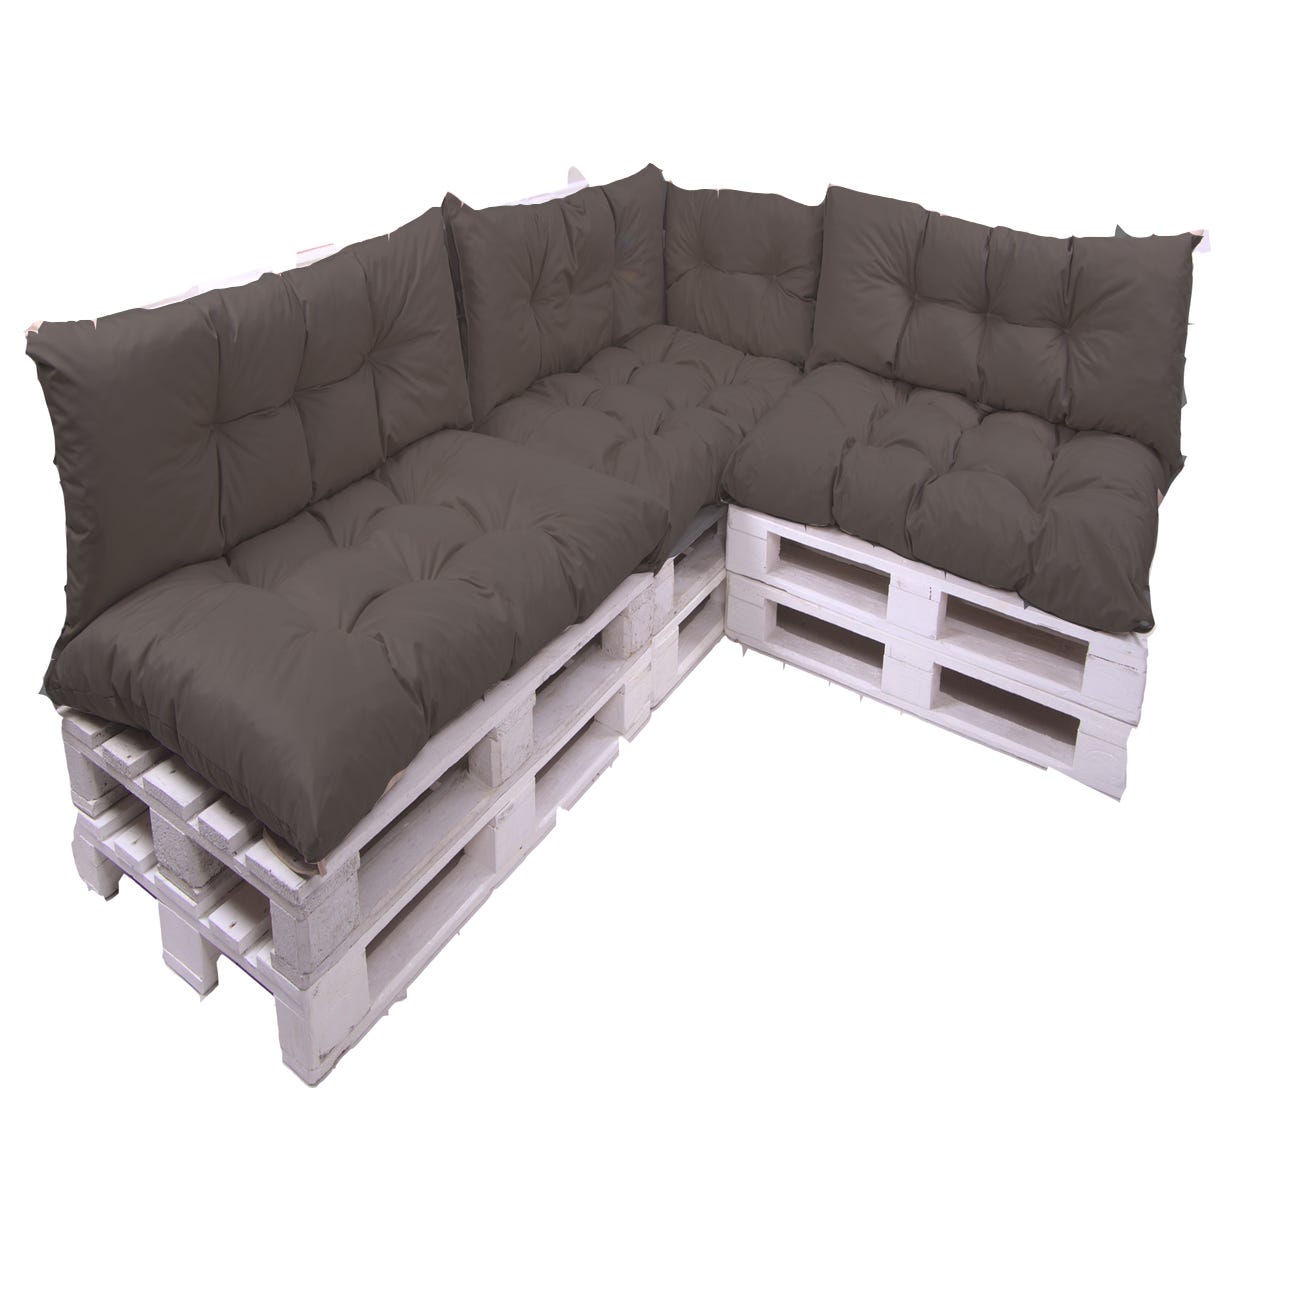 Des coussins pour des canapés en palette confortables - Elle Décoration